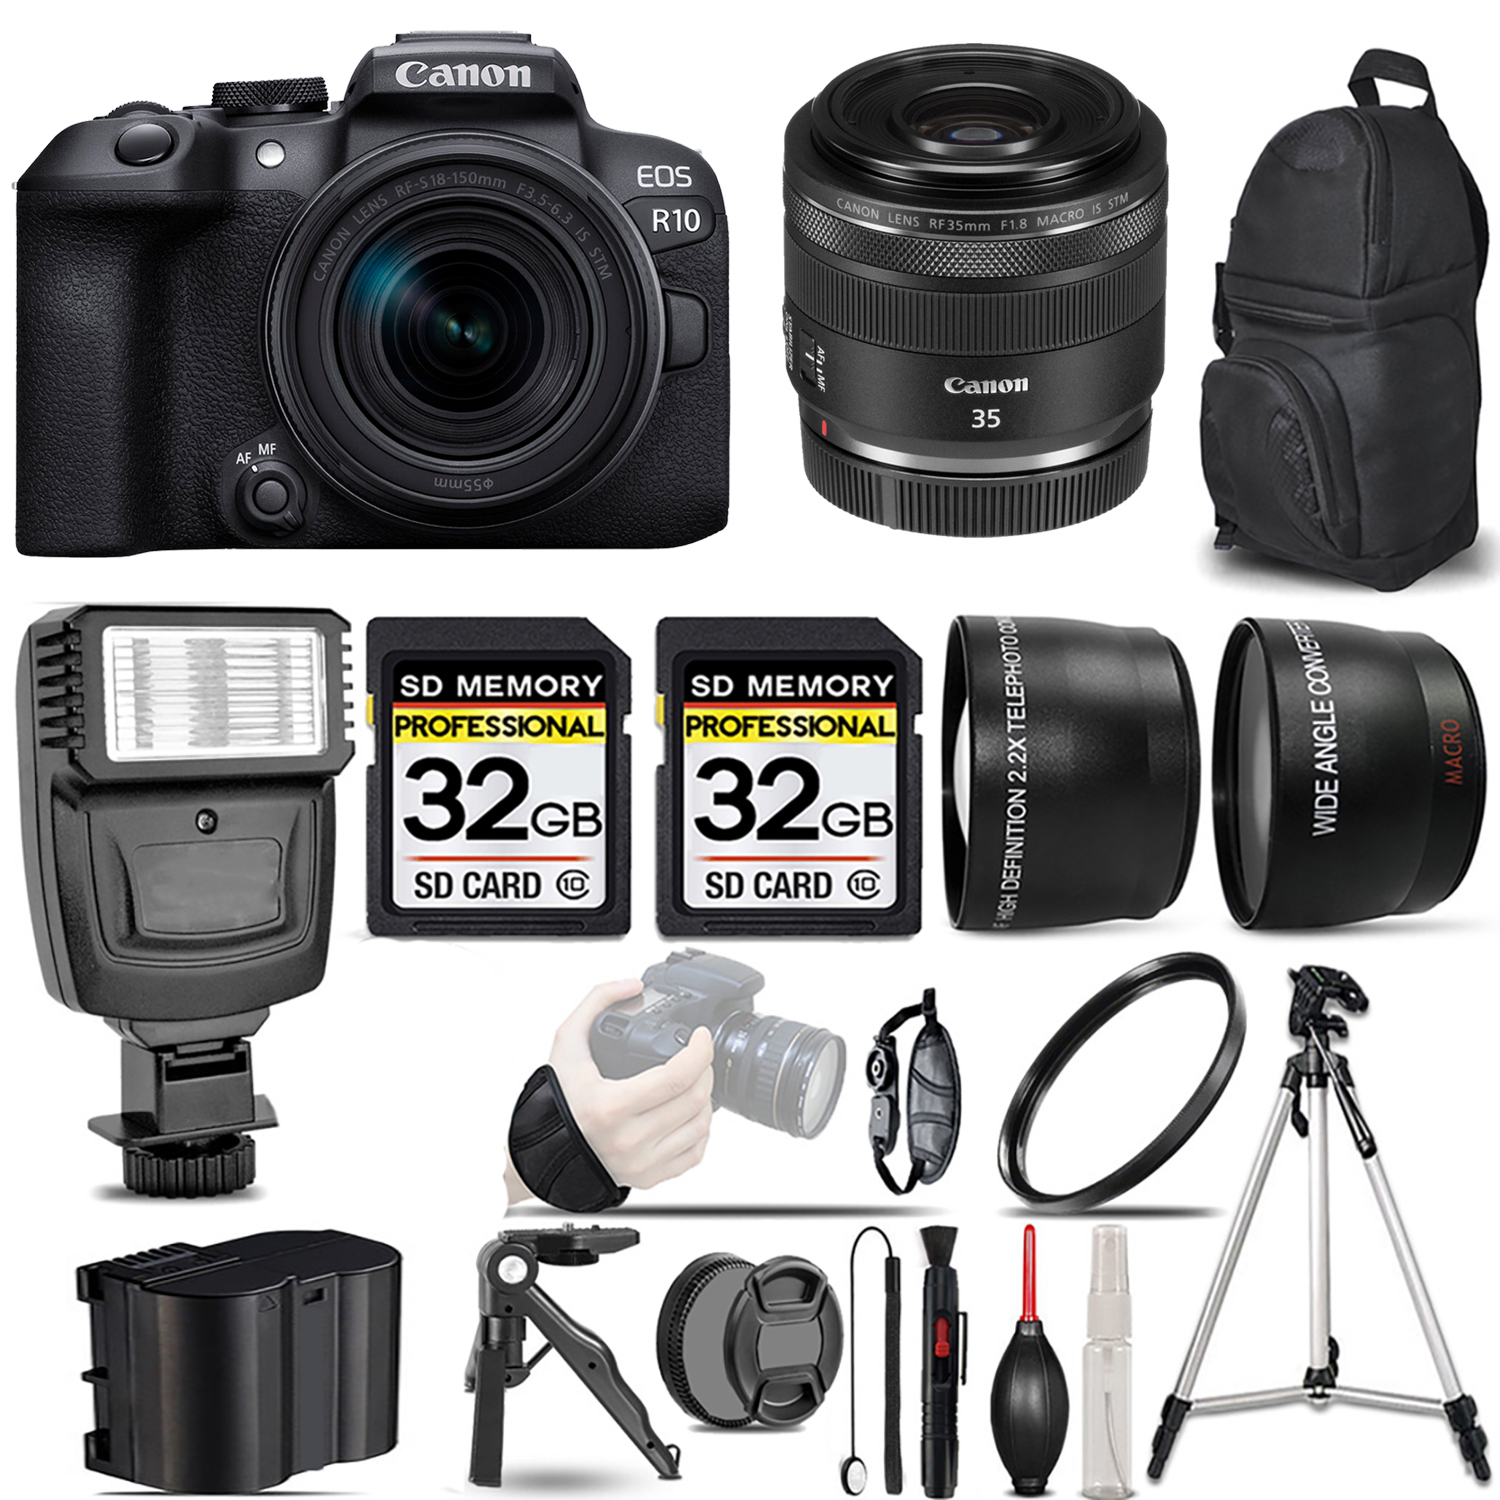 EOS R10 Camera + 18-150mm Lens + 35mm IS Macro STM Lens + Flash + 64GB - Kit *FREE SHIPPING*